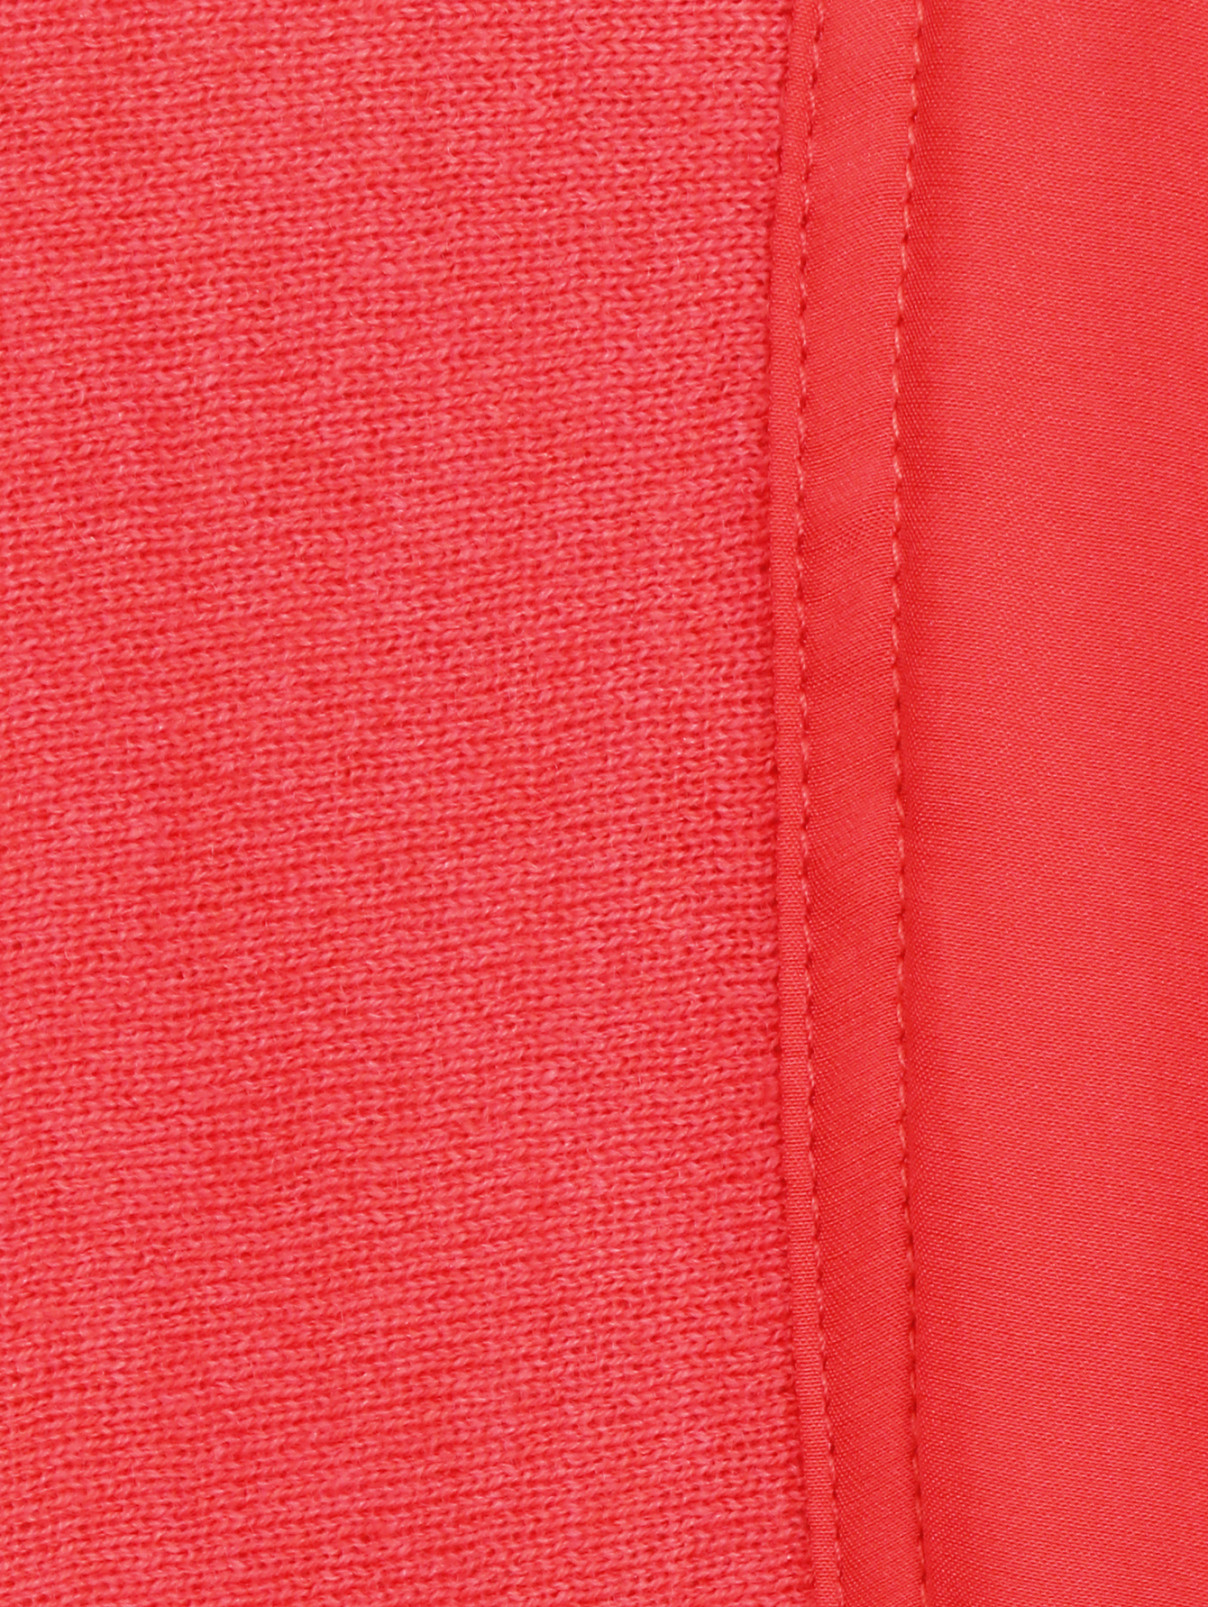 Кардиган из шерсти и шелка Marina Rinaldi  –  Деталь  – Цвет:  Оранжевый